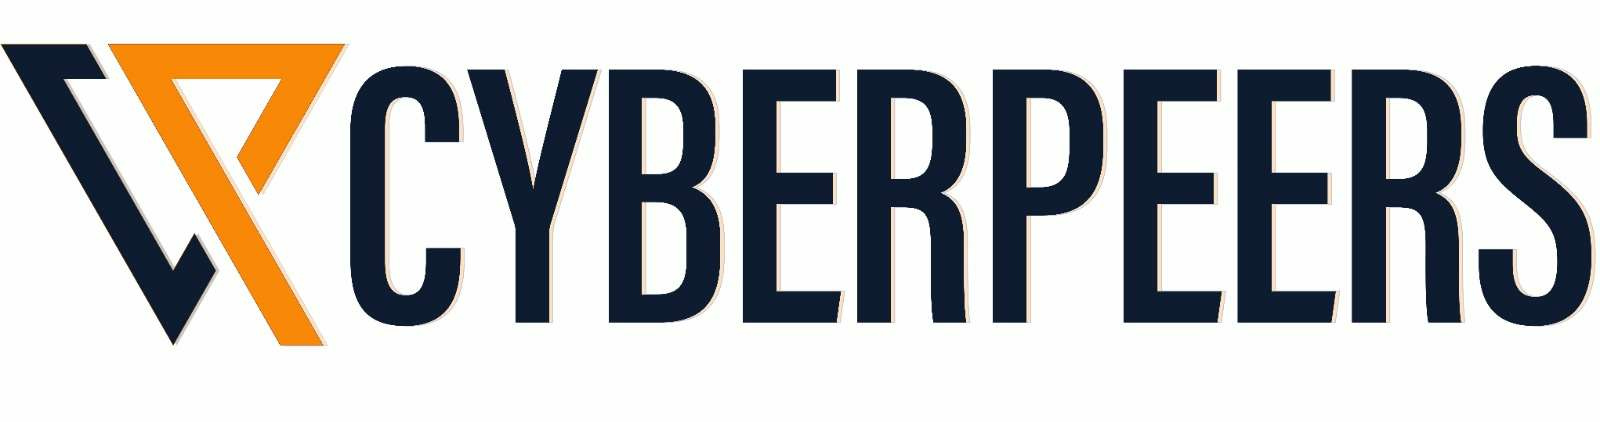 Cyberpeers logo